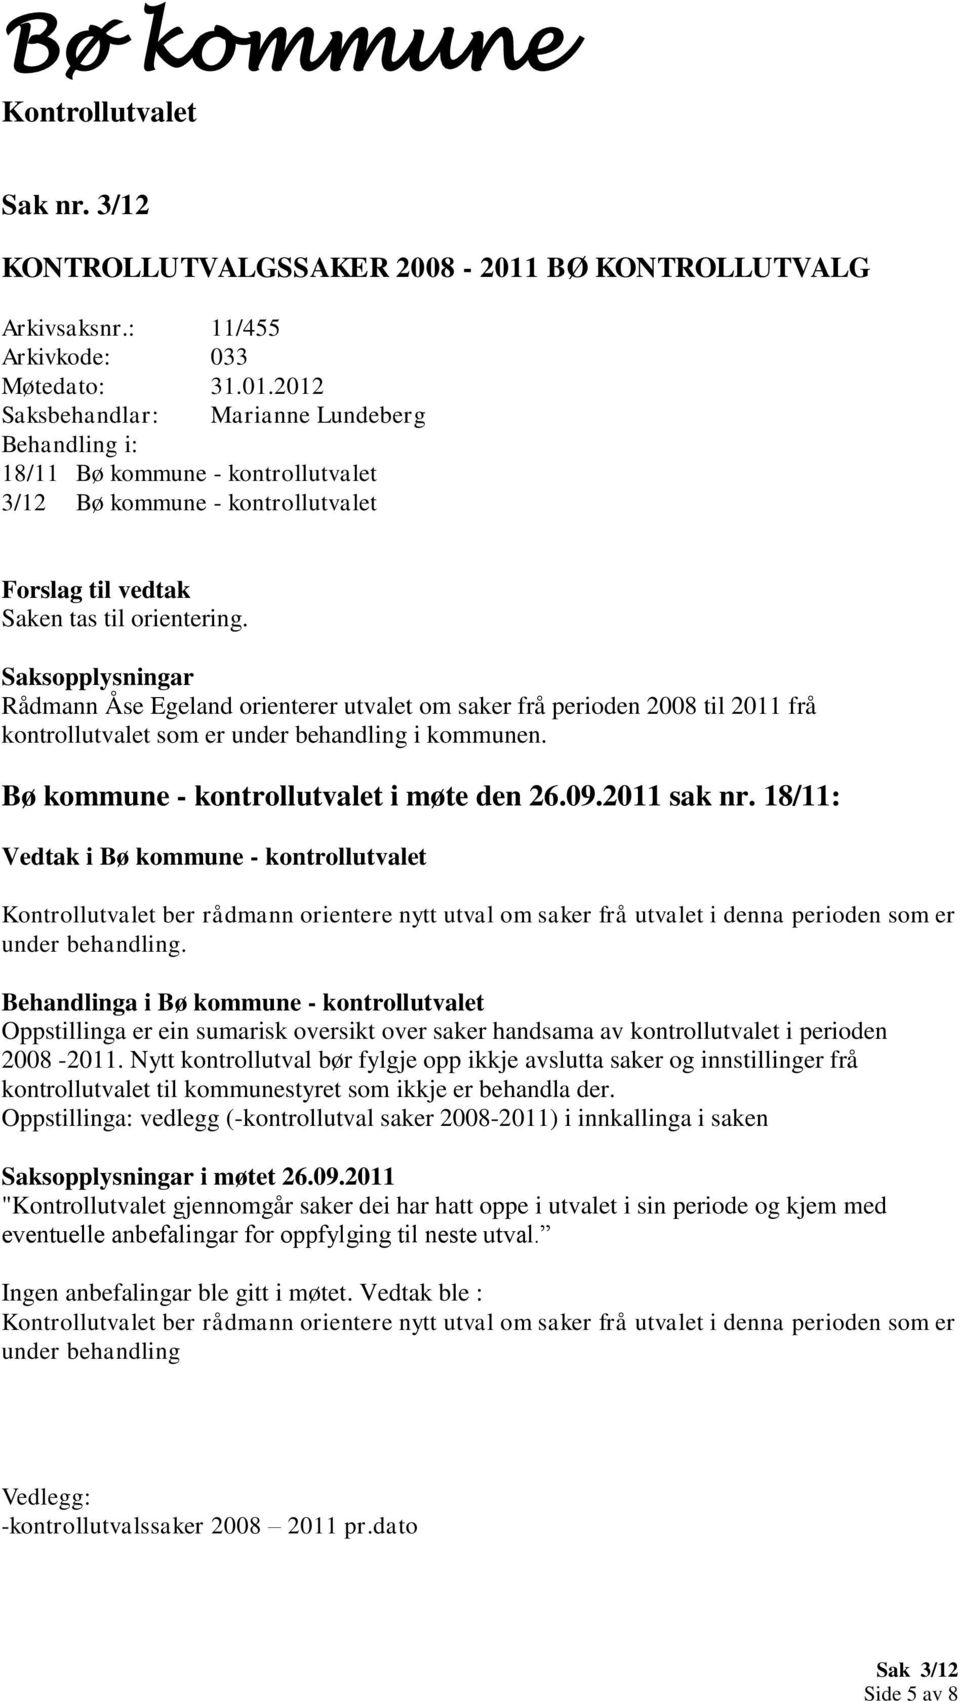 18/11: Vedtak i Bø kommune - kontrollutvalet ber rådmann orientere nytt utval om saker frå utvalet i denna perioden som er under behandling.